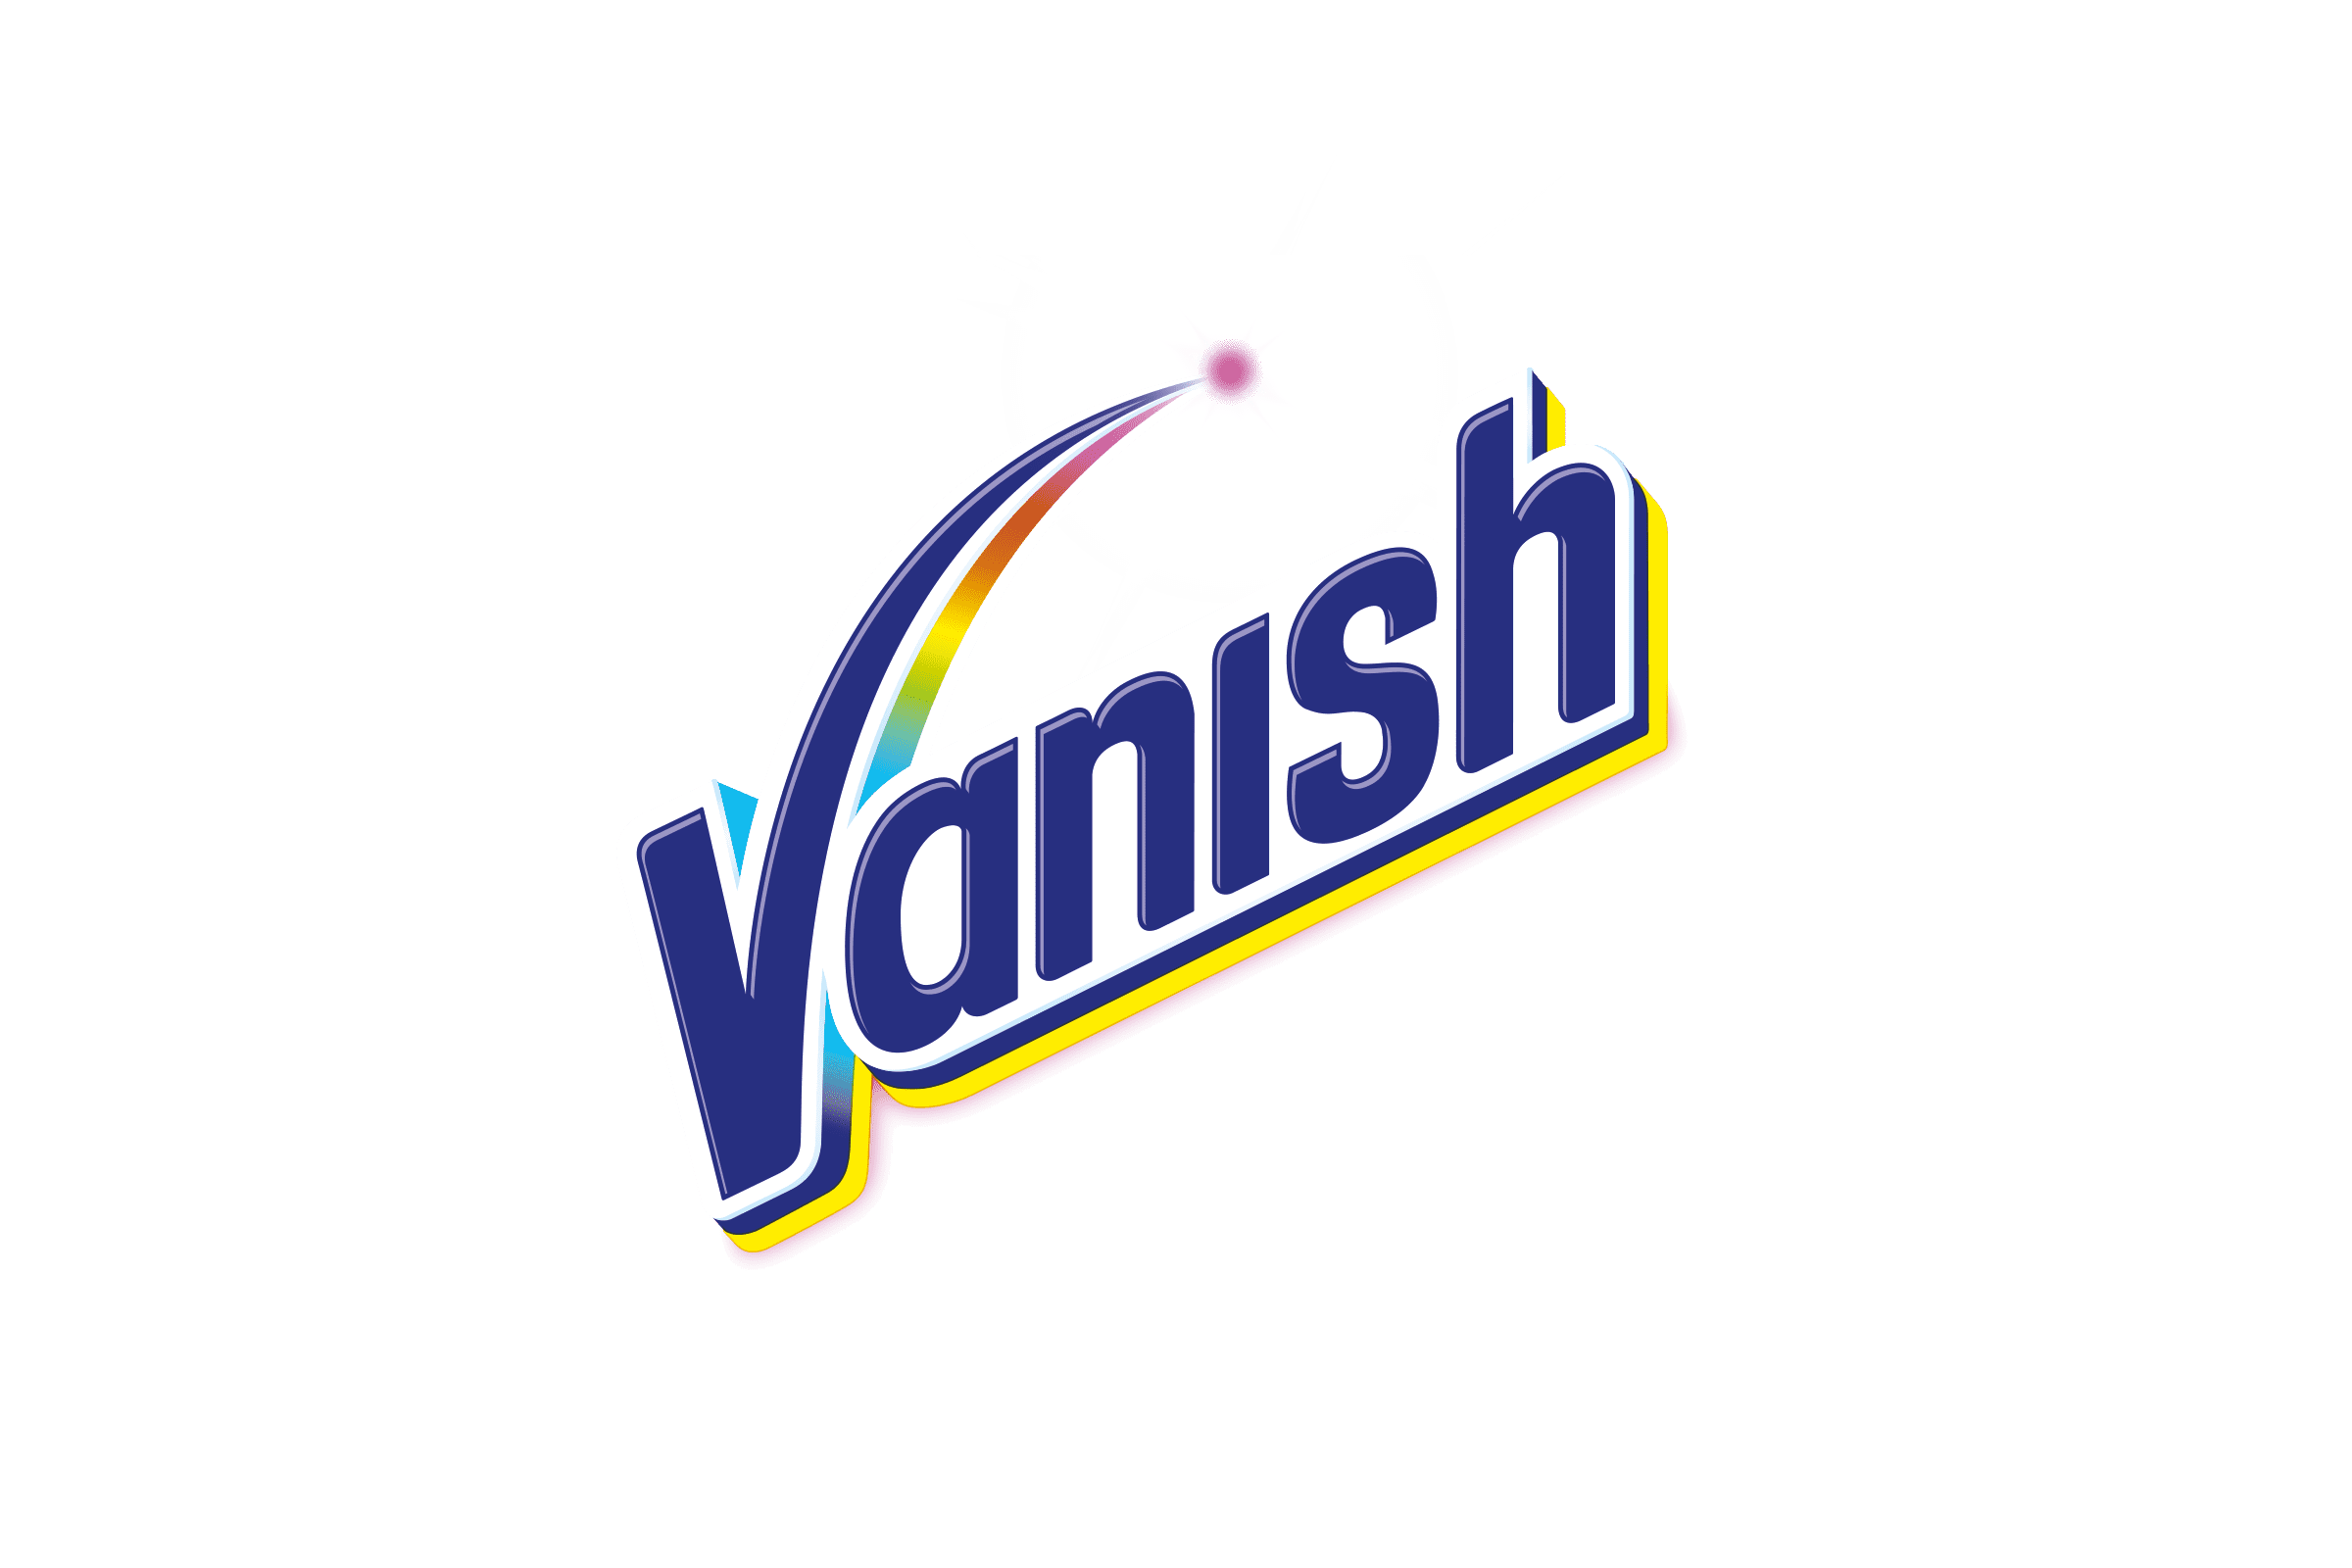 Vanish Logo 2016